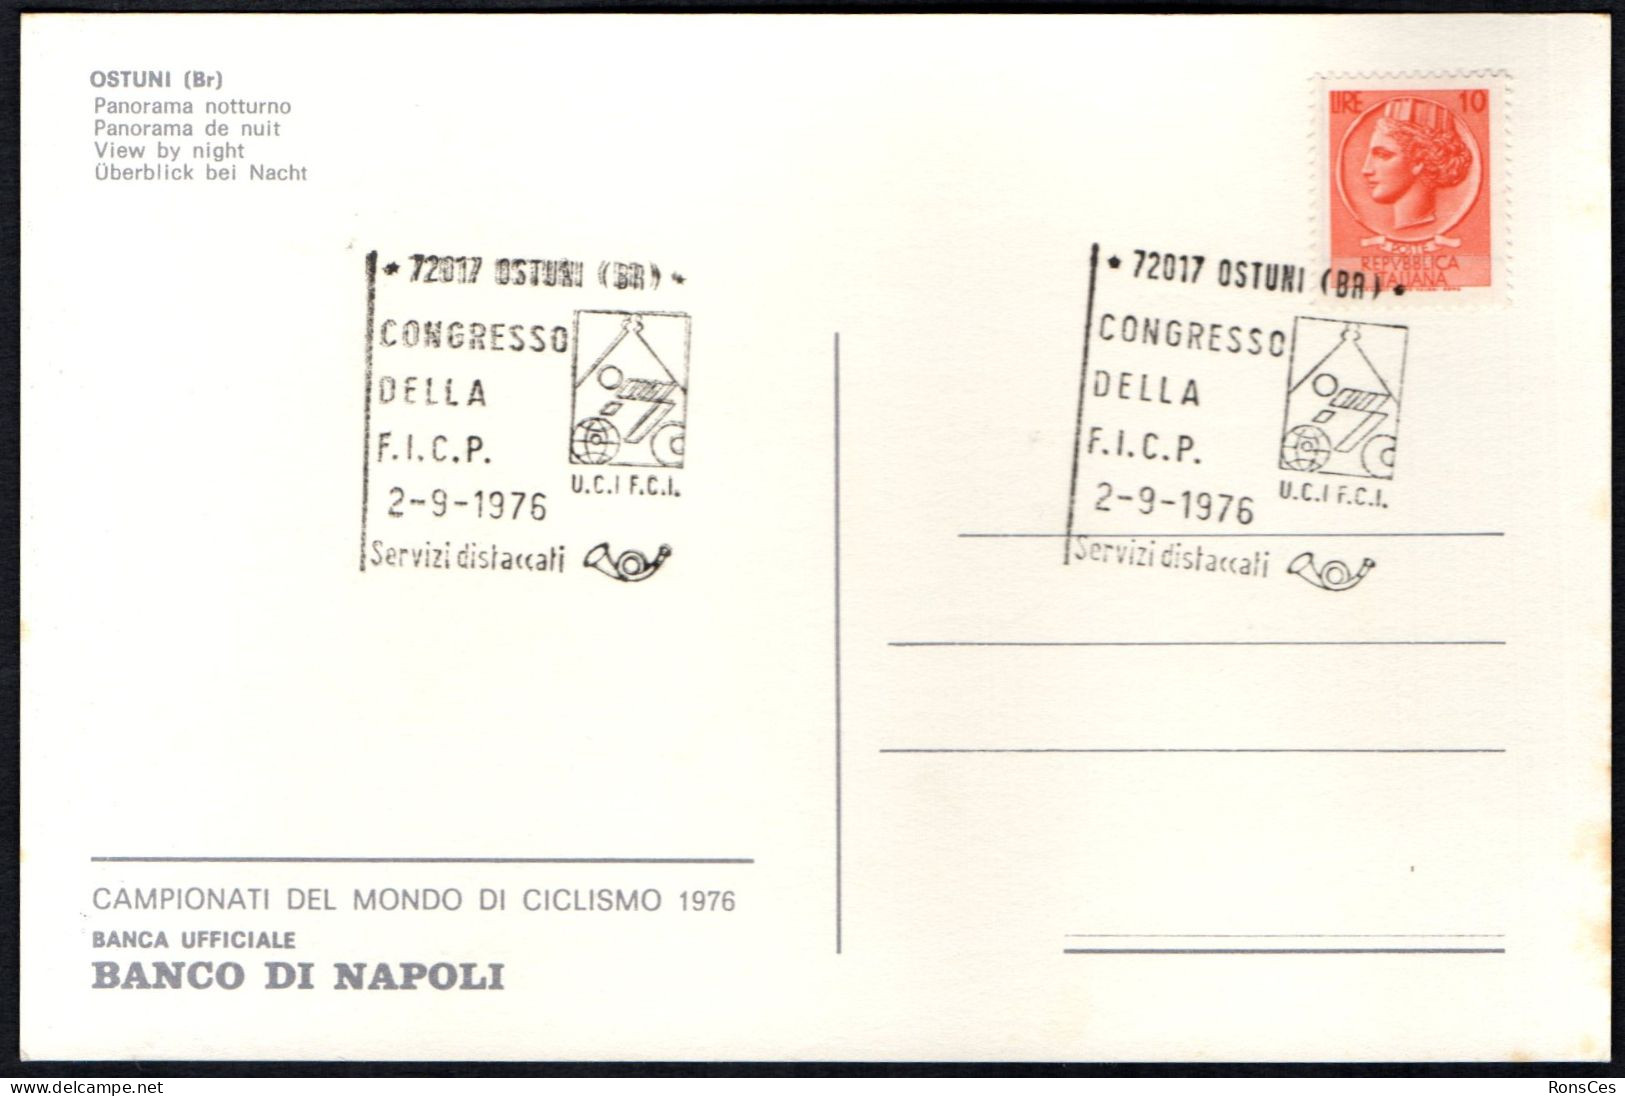 CYCLING - ITALIA OSTUNI (BR) 1976 - CONGRESSO DELLA F.I.C.P. - CARTOLINA UFFICIALE - A - Cycling